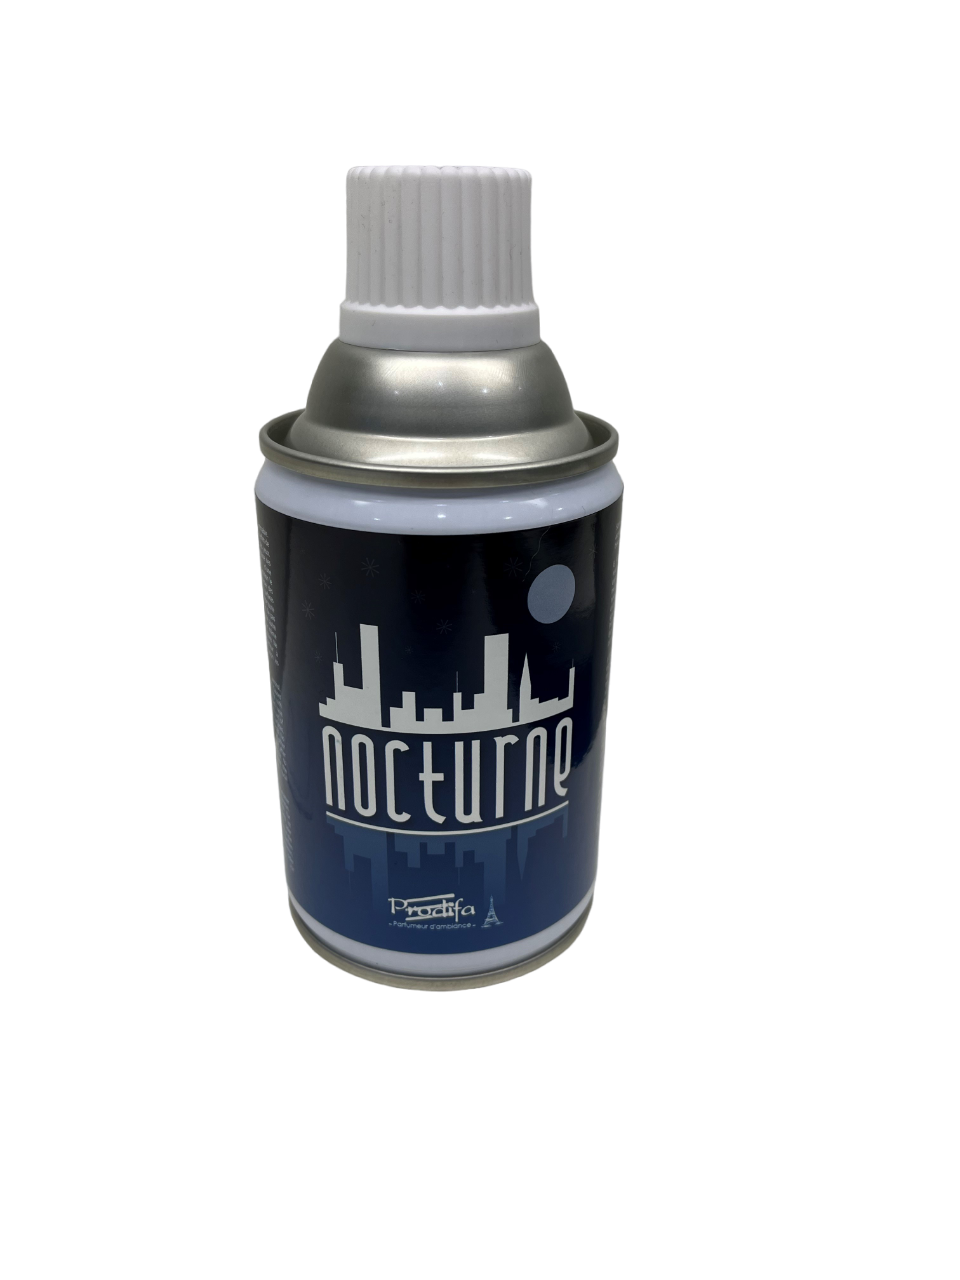 Raumduft Refill für Ideal Spender "Nocturne" 250 ml